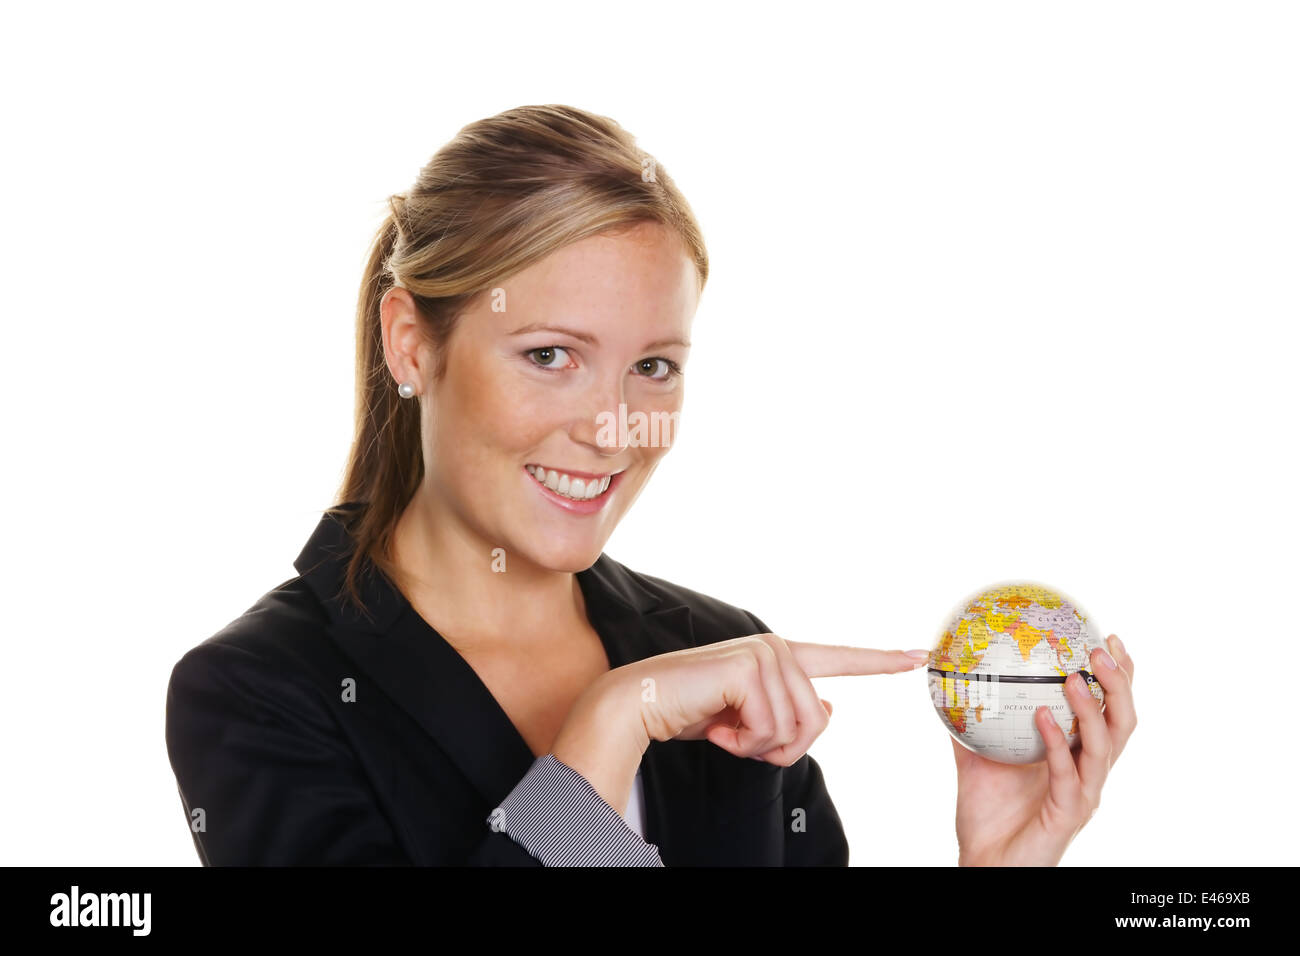 Une jeune femme tenant un globe dans sa main. Photo symbolique pour voyages et tourisme Environnement Banque D'Images